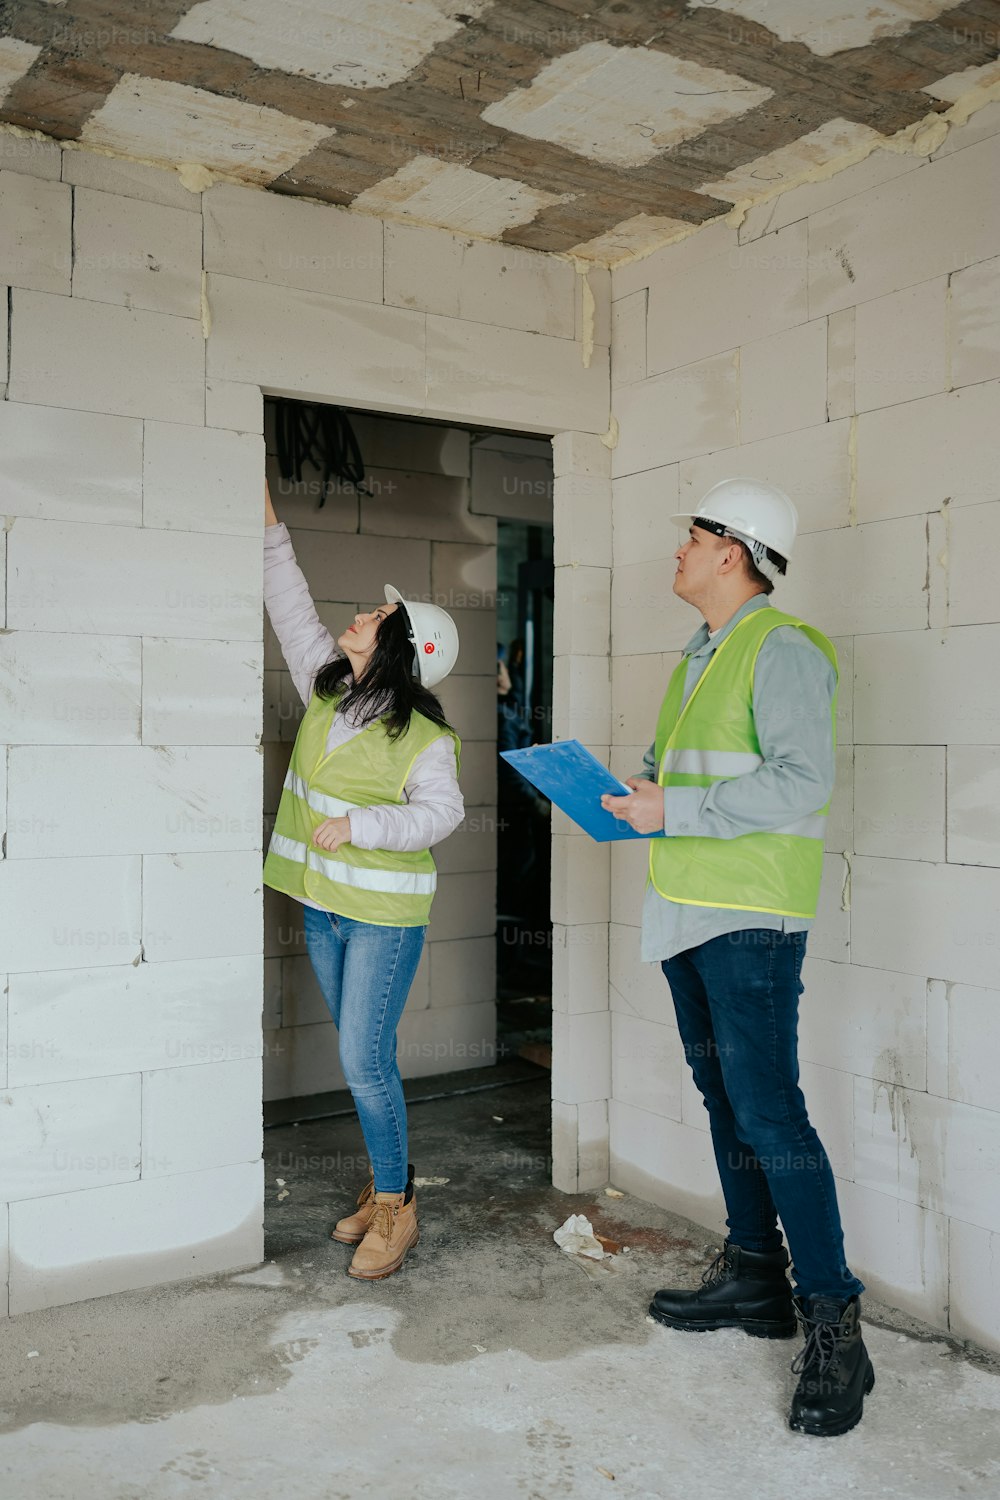 Un homme et une femme debout dans une pièce en construction